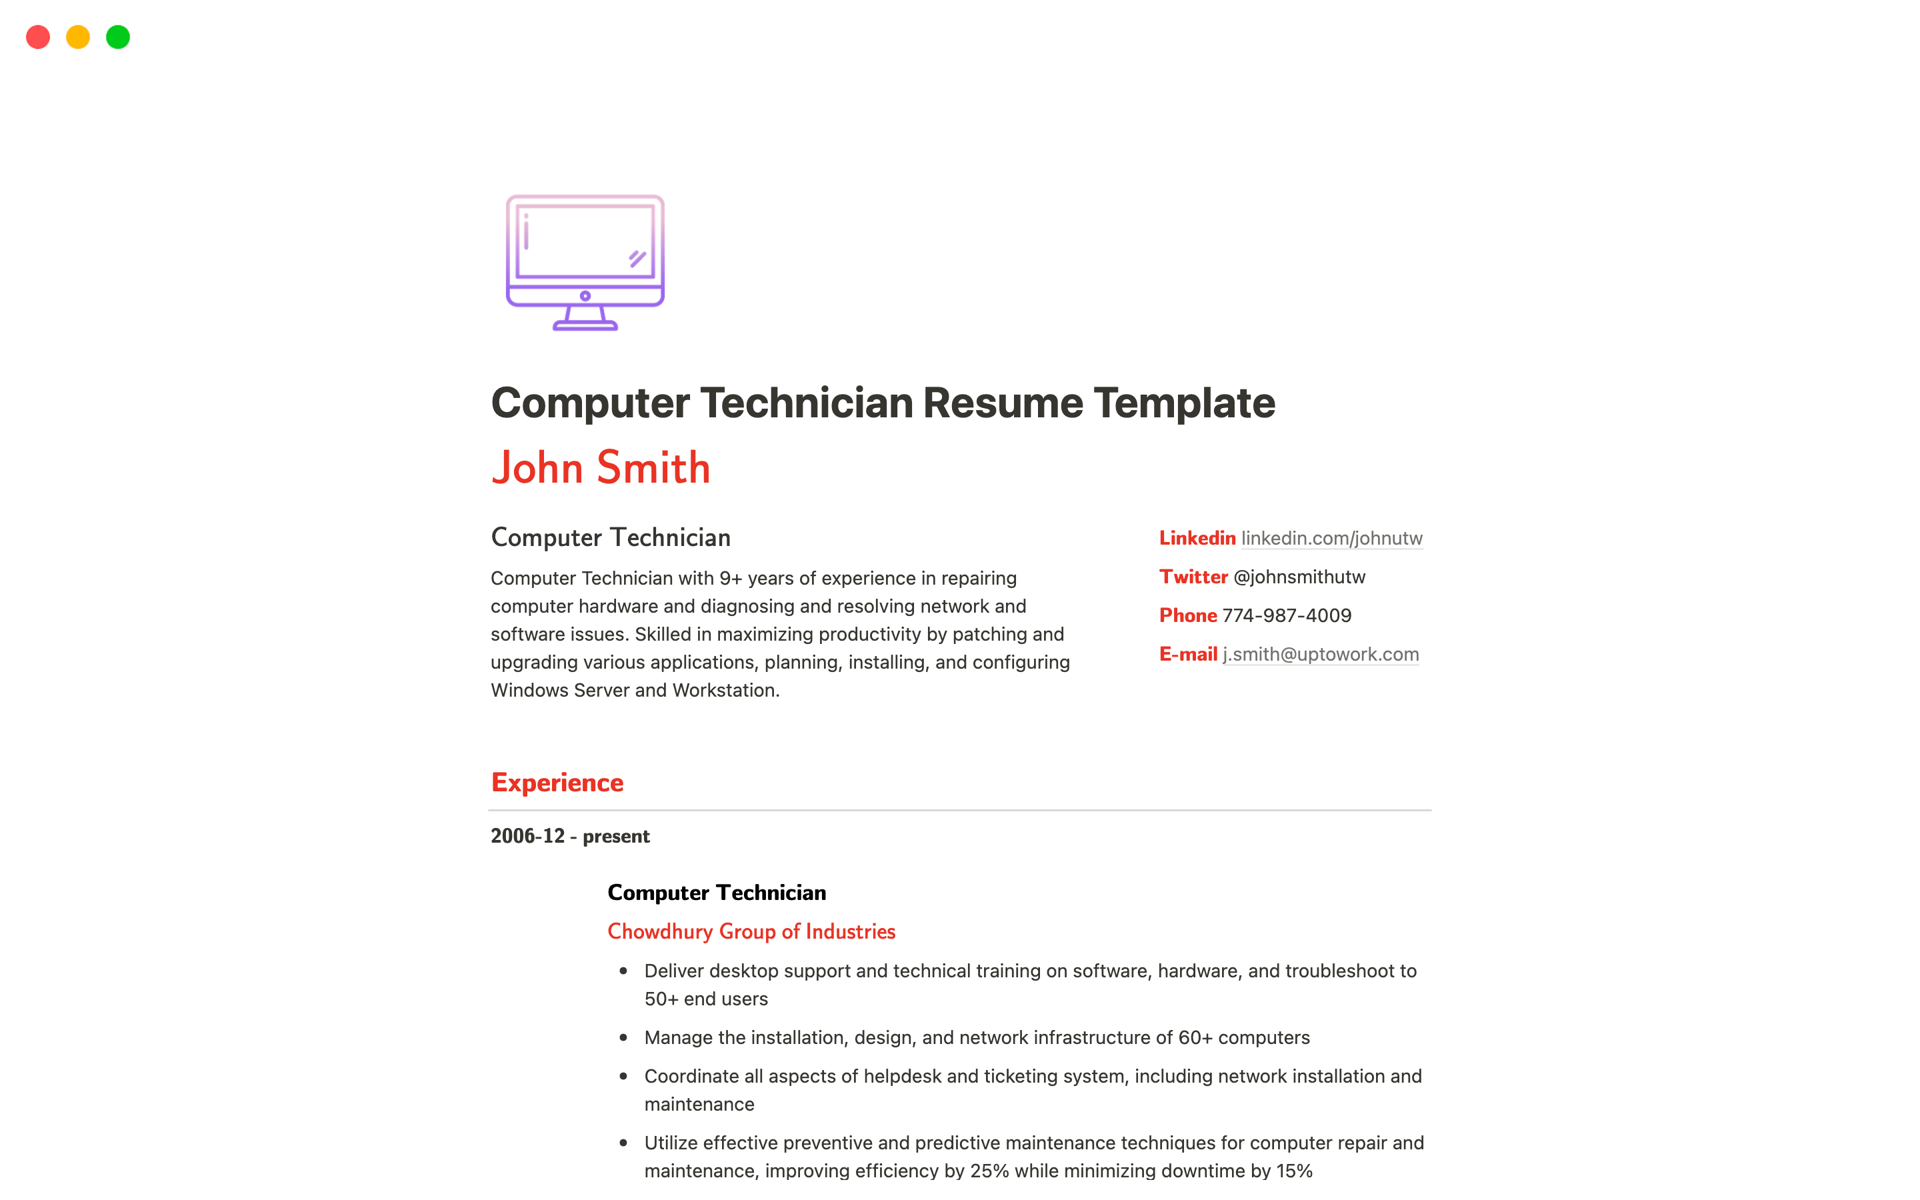 En förhandsgranskning av mallen för Computer Technician Resume